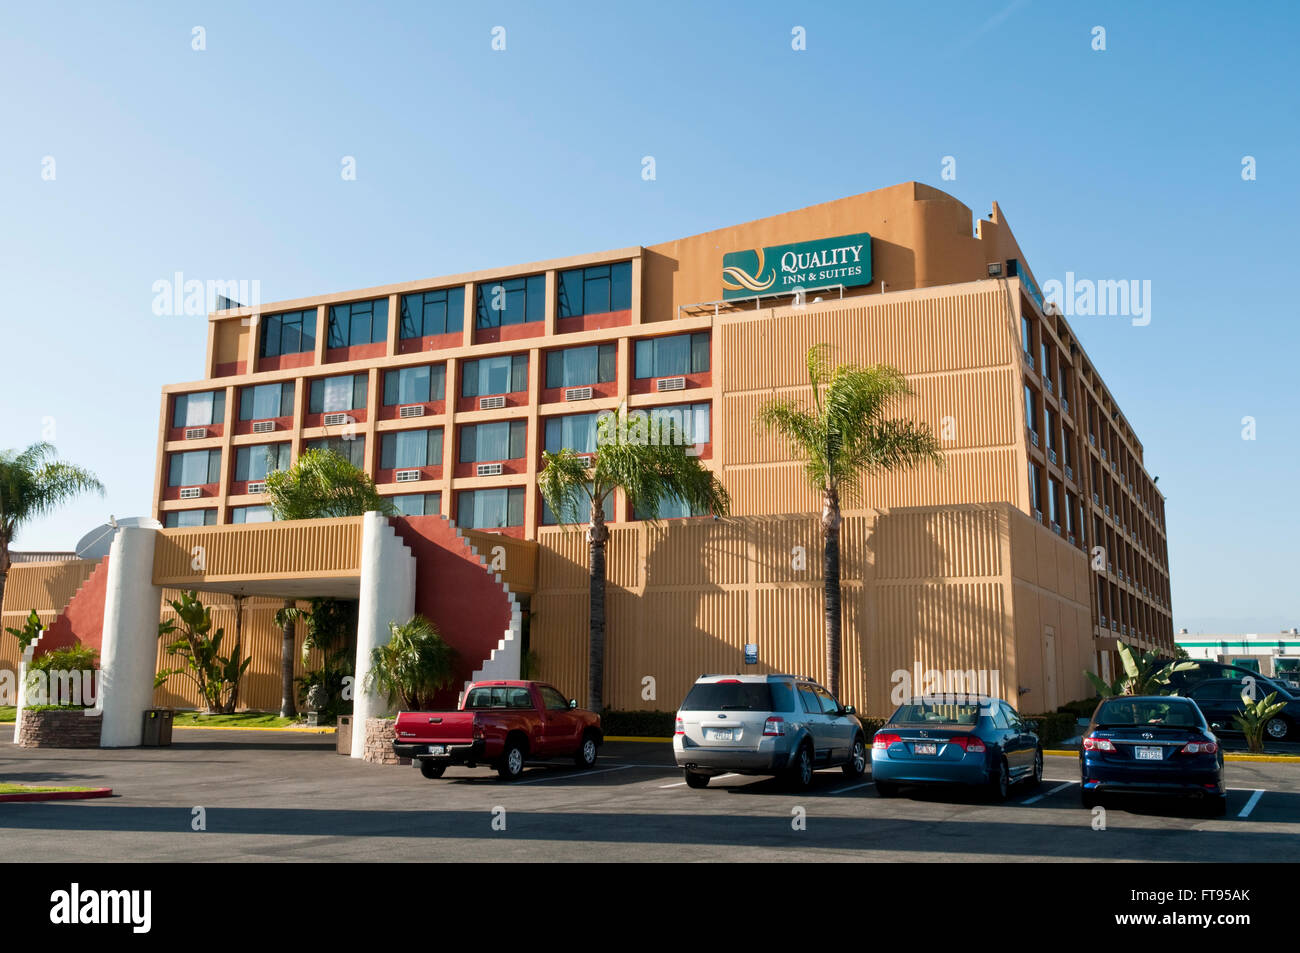 Le Montebello Quality Inn, un hôtel agréable à Montebello, Los Angeles, Californie, USA Banque D'Images